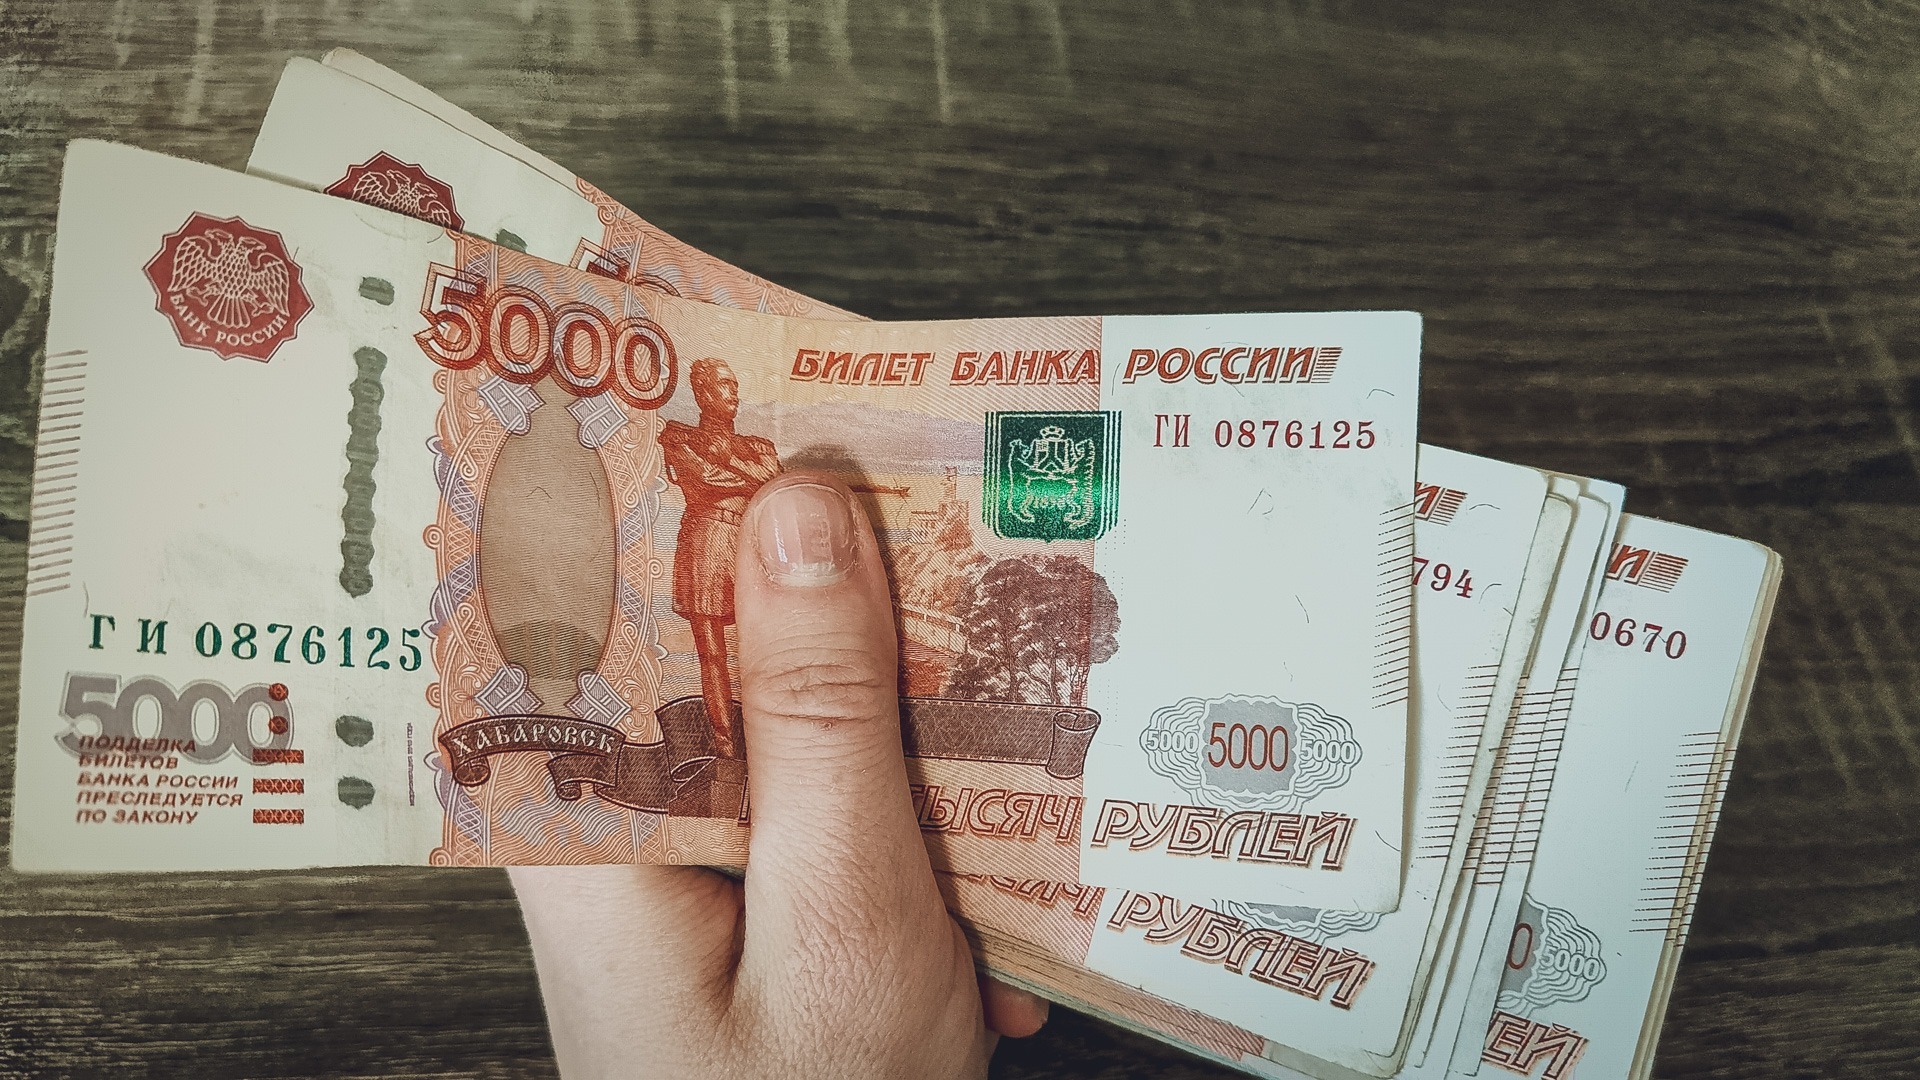 ОПГ в Белгороде наживалась на компаниях и заработала 235 млн рублей